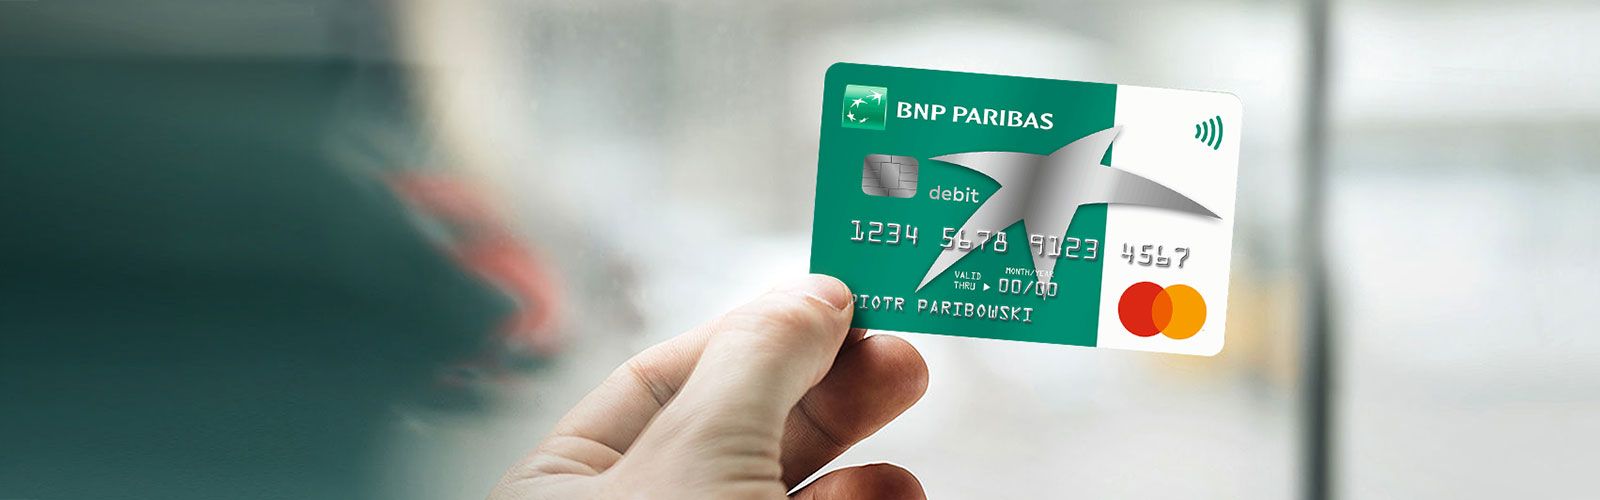 Zmiany w BNP Paribas - nowe prowizje i cennik